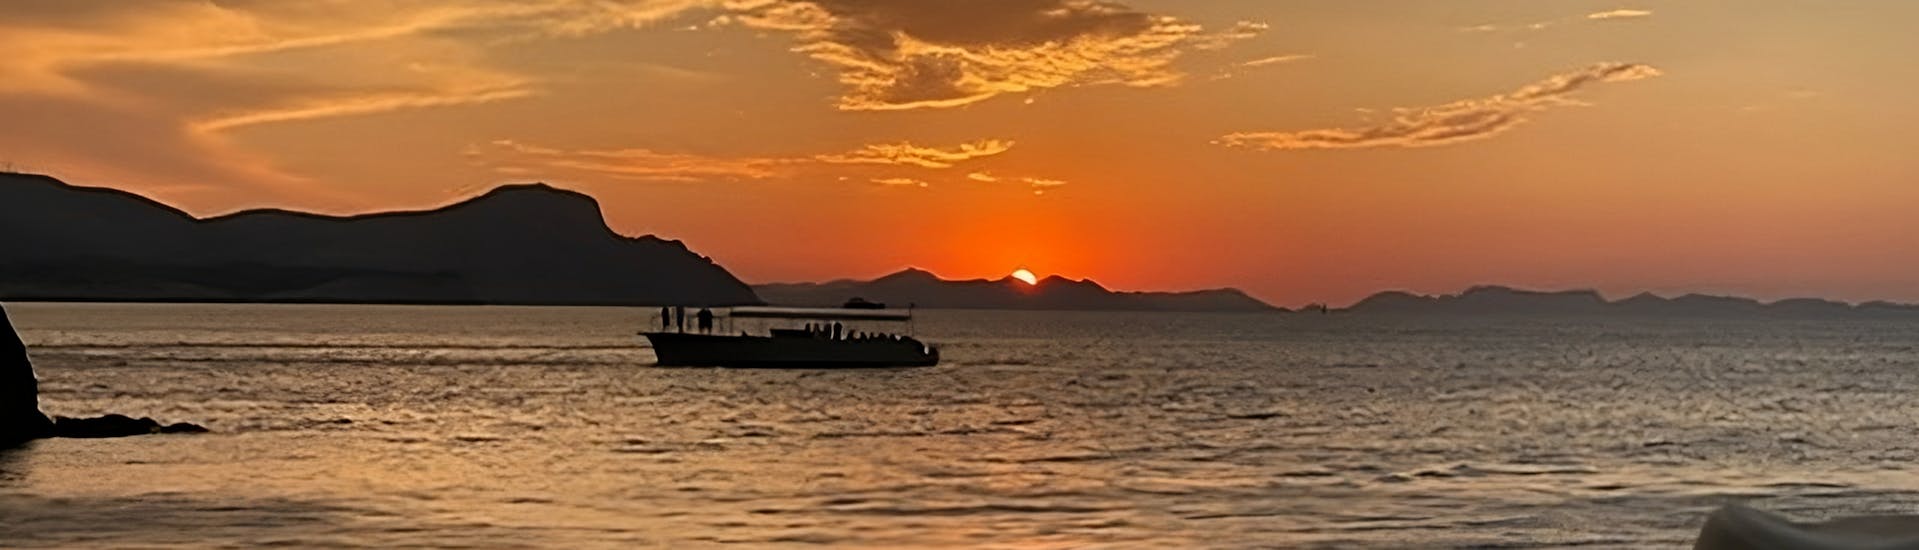 Die SOnne geht über dem Meer unter während der Bootstour bei Sonnenuntergang ab Cala Ratjada mit Jazzmusik und Delfinbeobachtung.